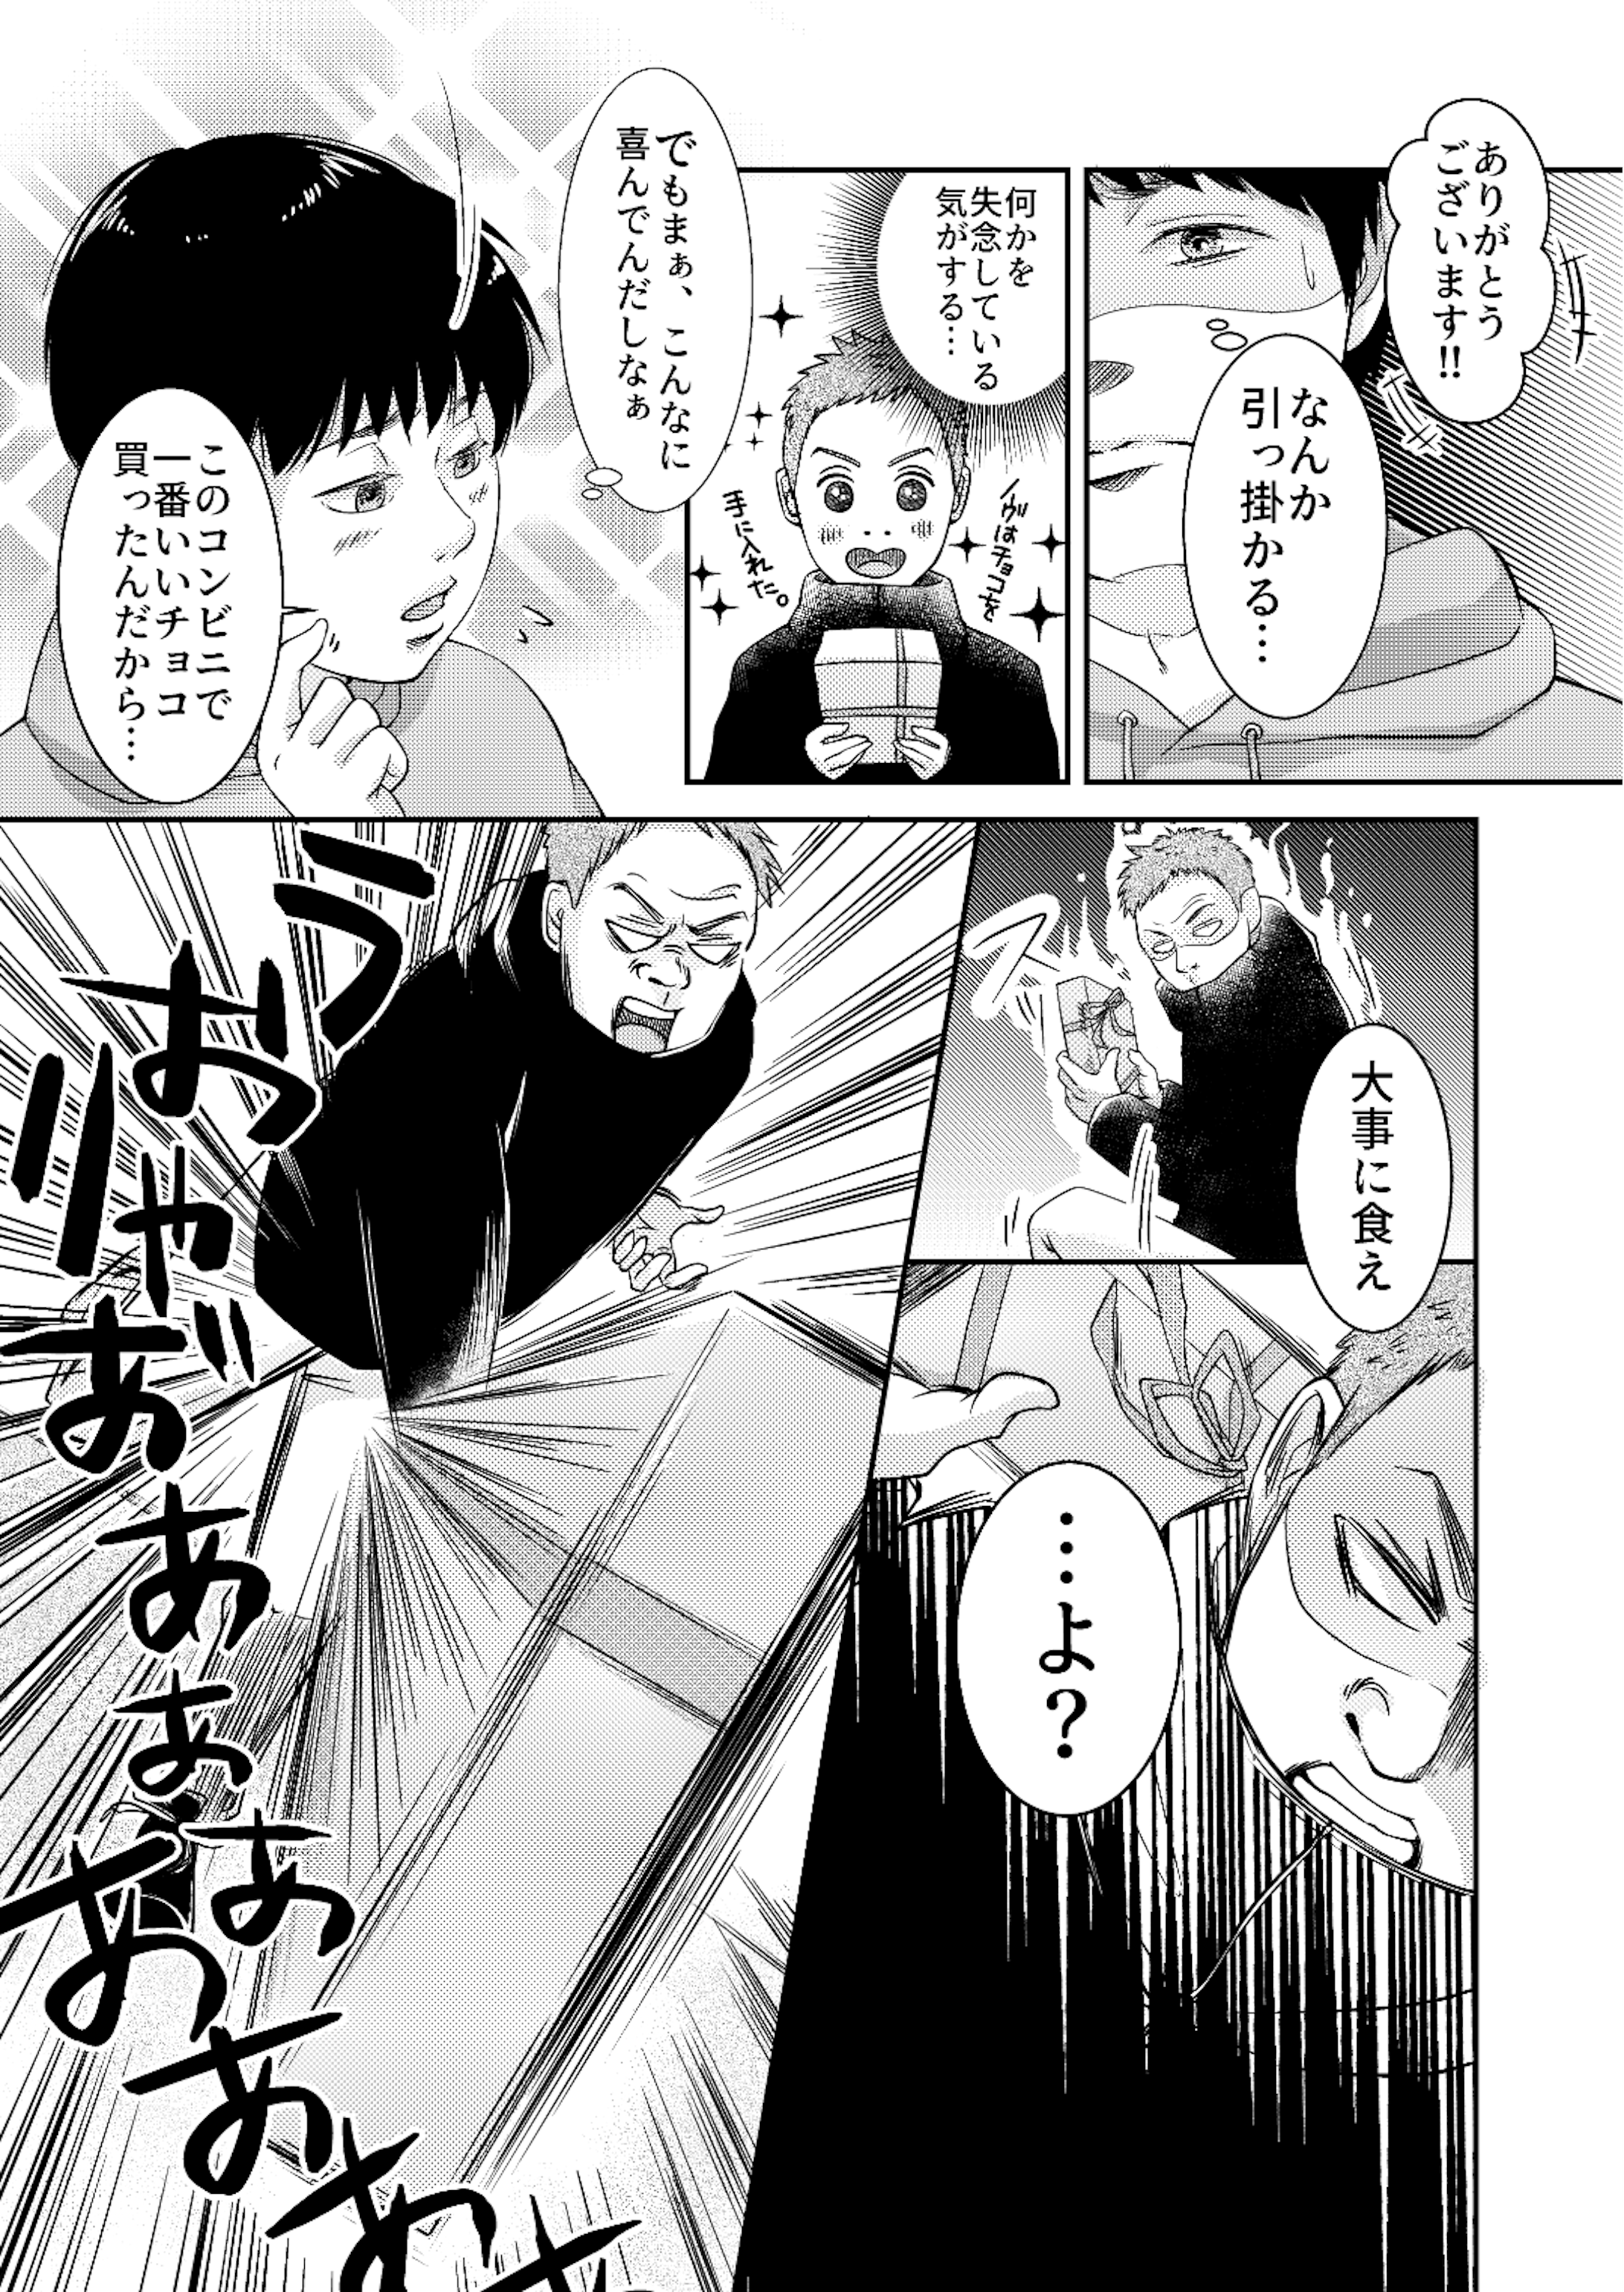 ナナフシギさんのファンアート漫画 01-2